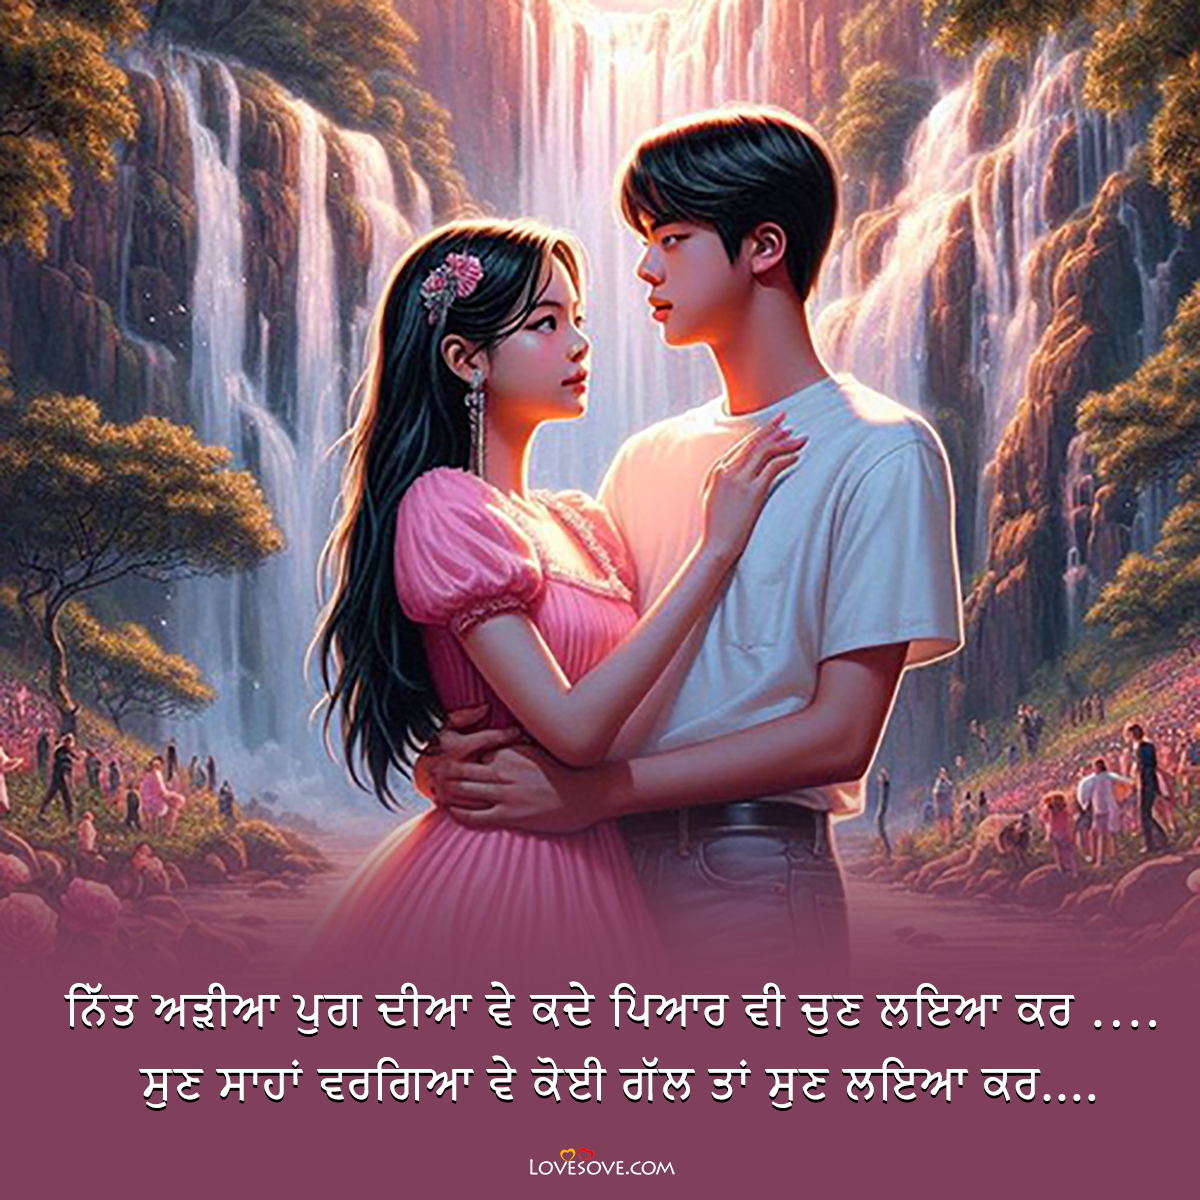 love quotes shayari panjabi lovesove 2, punjabi love shayari